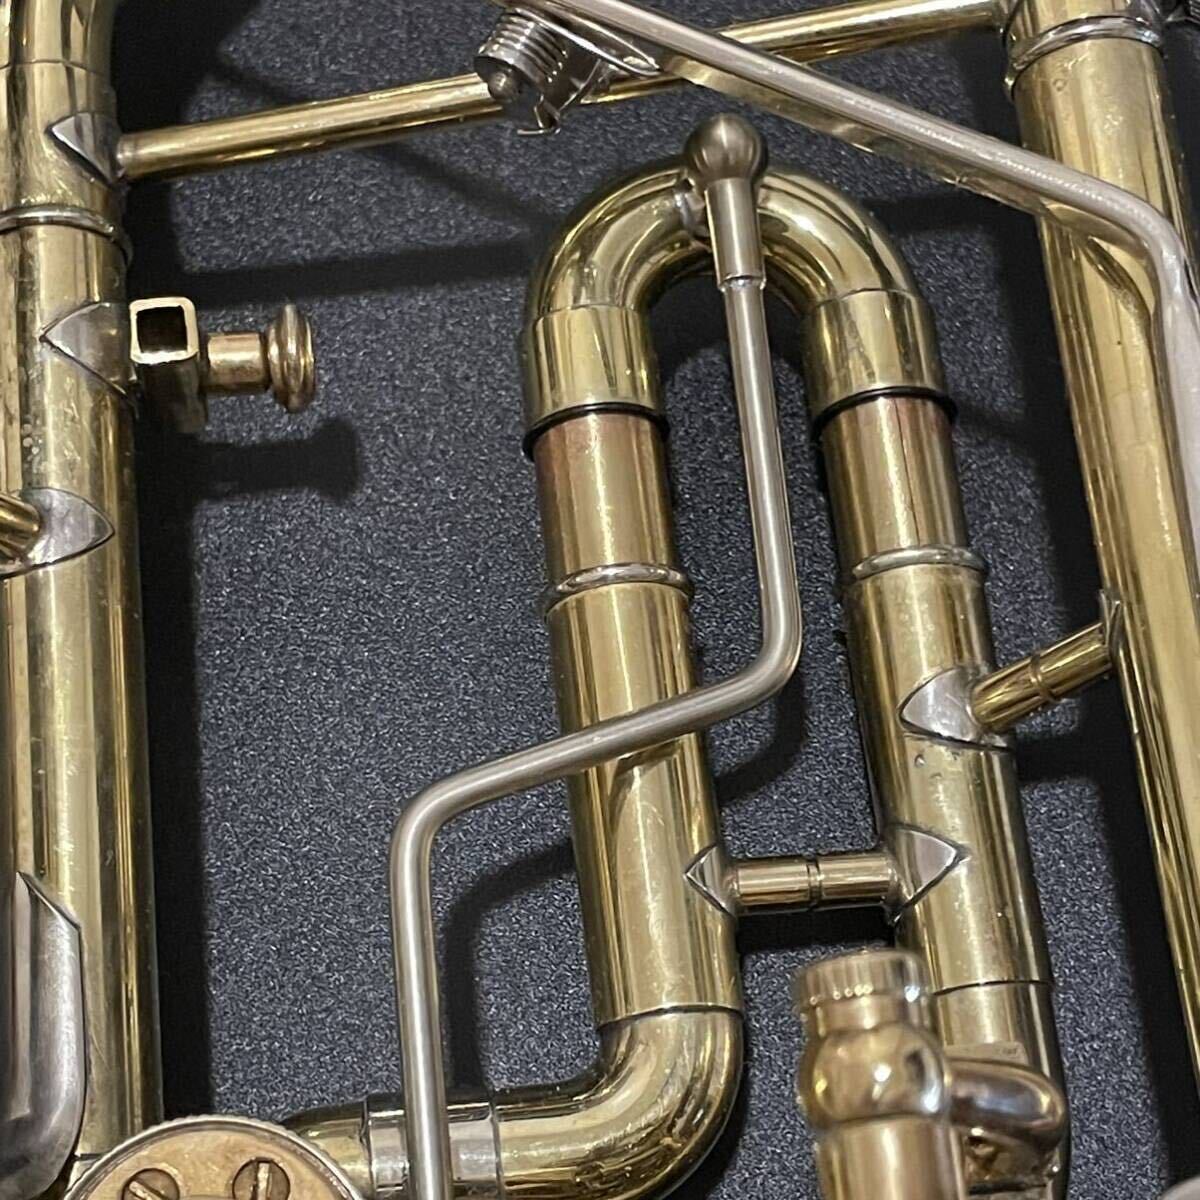 ** техническое обслуживание settled *Amati kraslice роторный труба B♭amati вода ключ есть Gold Чехия производства мундштук . с футляром 